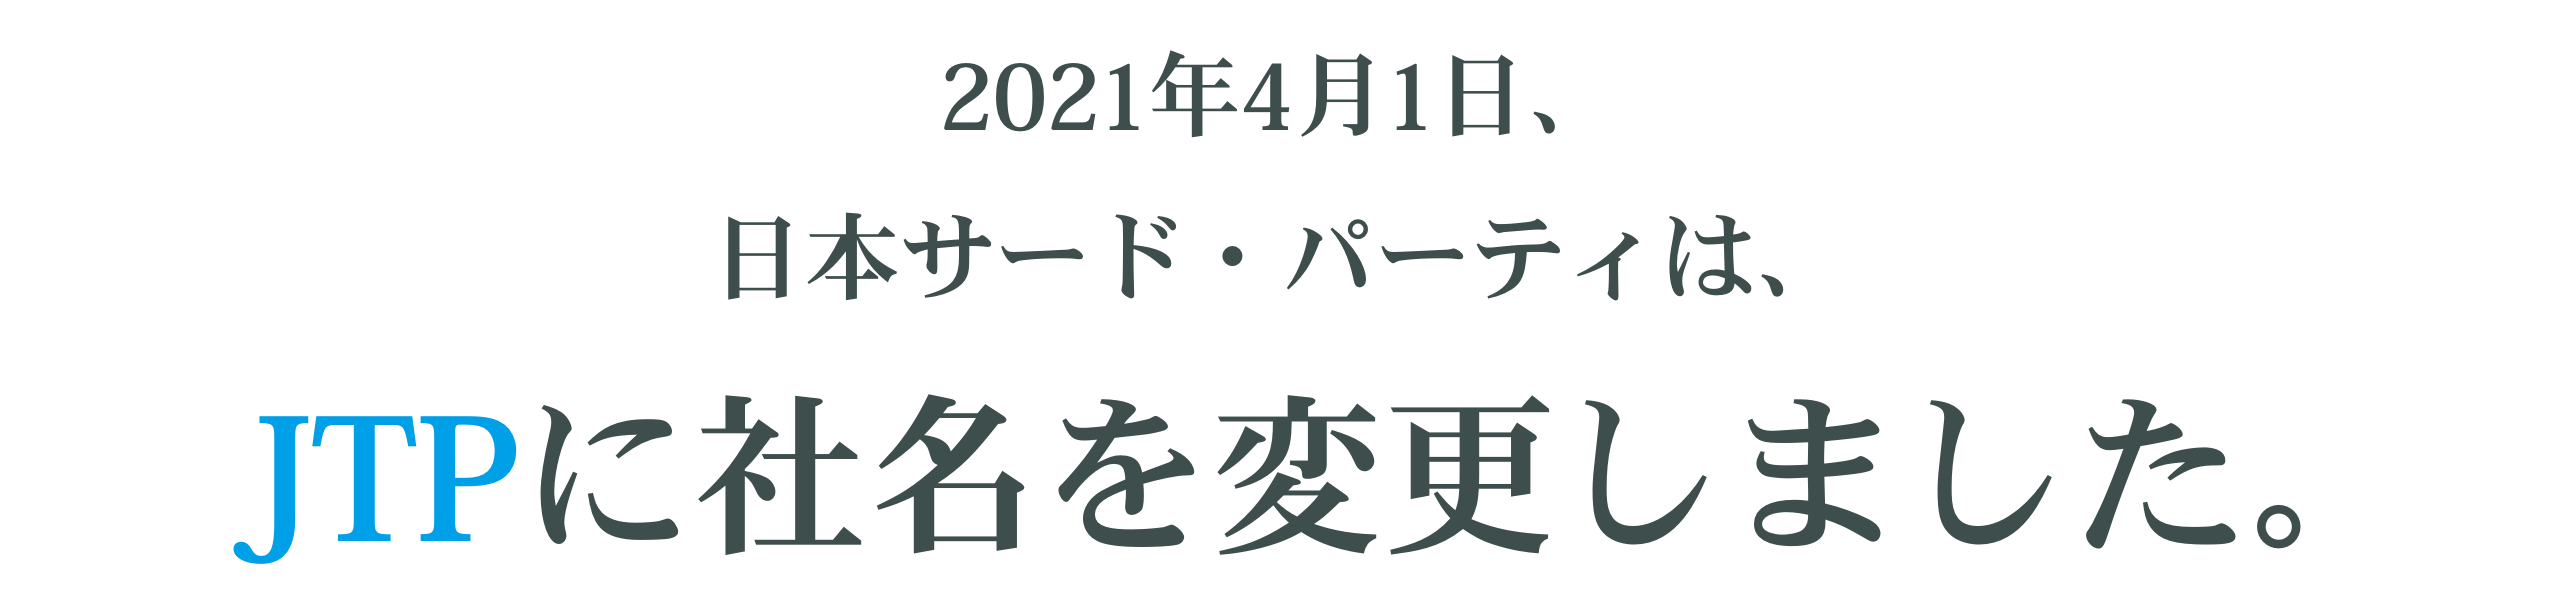 2021年4月1日、日本サード・パーティは、JTPに社名を変更しました。